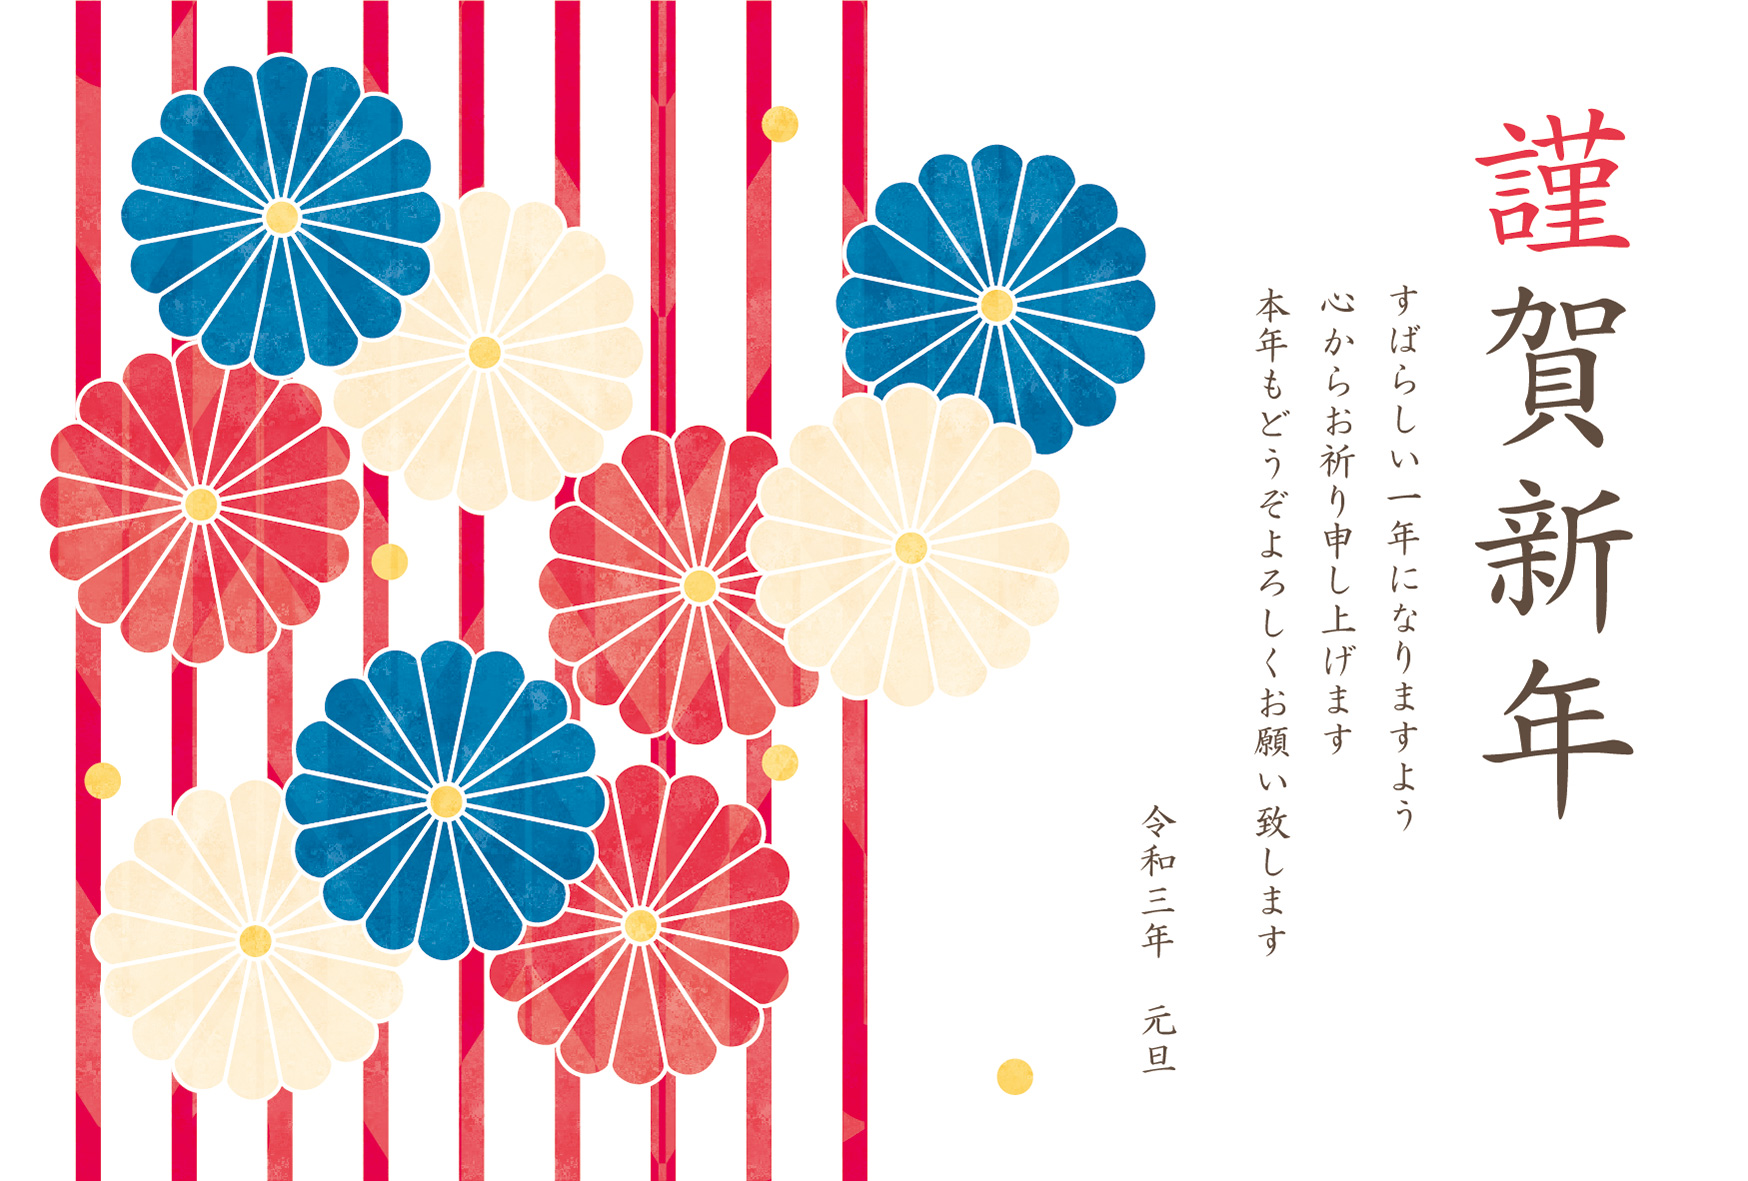 年賀状 寅年 三色の菊の花とストライプ柄のデザイン 年賀状22無料イラスト素材集